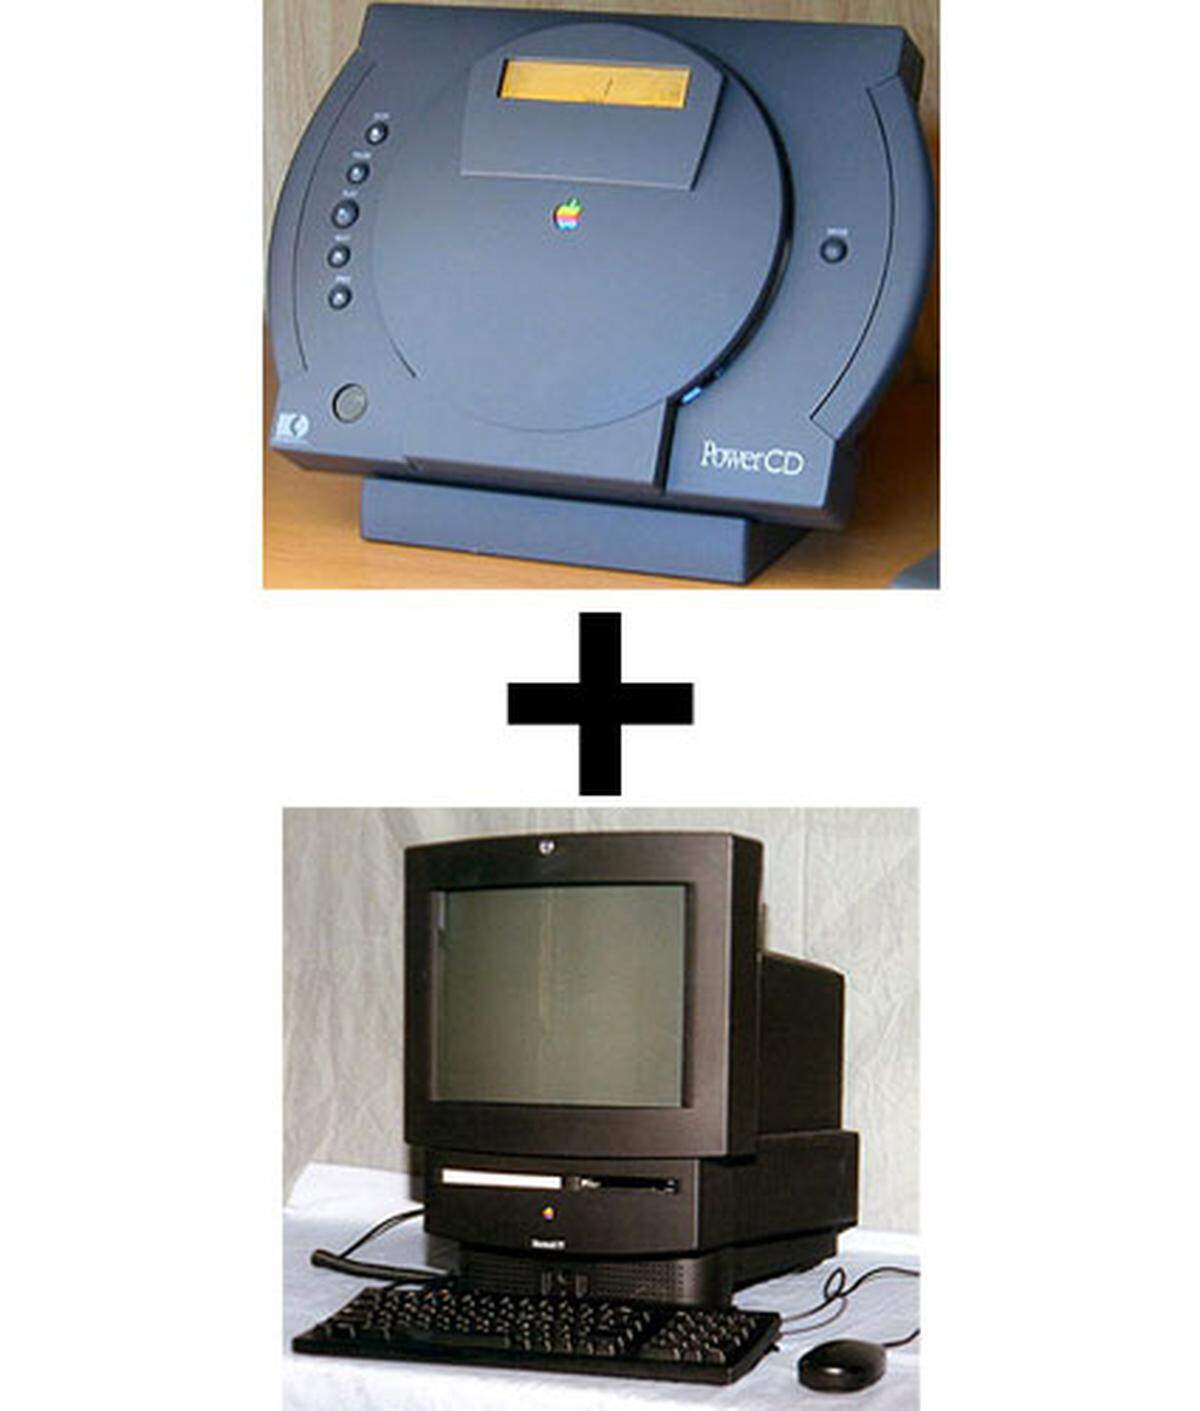 Auch Apples erste Versuche, in die Wohnzimmer zu gelangen, scheiterten kläglich. So konnte der Multimedia-Player PowerPC zwar Audio- und Kodak-Photo-CDs wiedergeben, nicht aber Videos. Dass das Gerät in Verbindung mit einem Computer zum CD-Laufwerk wurde, konnte dieses Manko nicht aufwiegen - echte CD-Laufwerke waren deutlich billiger als der PowerCD. Als dann auch noch die ersten DVD-Player auf den Markt kamen, sah man bei Apple ein, dass die Idee gescheitert war.  Dem Macintosh TV, einer Kreuzung aus Computer und Fernseher, erging es nicht besser. Ein Jahr nach Markteinführung wurde das Gerät wegen schlechter Verkaufszahlen eingestellt. Sein größtes Manko: Der "Mac TV" konnte entweder als Fernseher oder als Computer verwendet werden. Im Computer-Modus fernzusehen war aber nicht möglich.